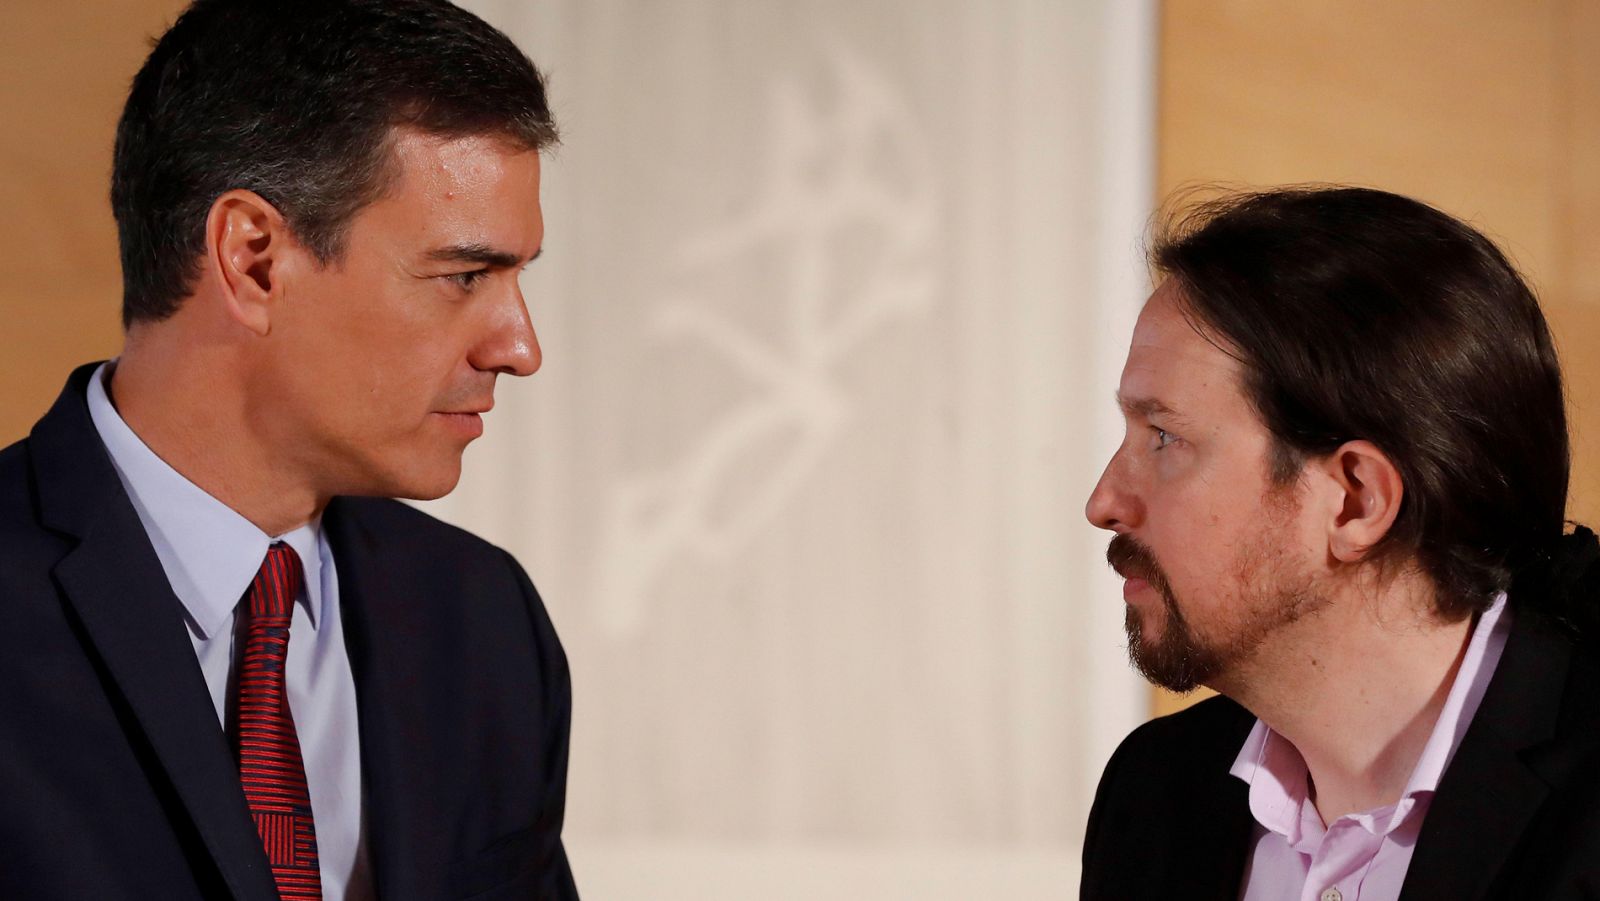 El PSOE acusa a Iglesias de no querer negociar y pone en duda su "lealtad" tras la reunión con Sánchez